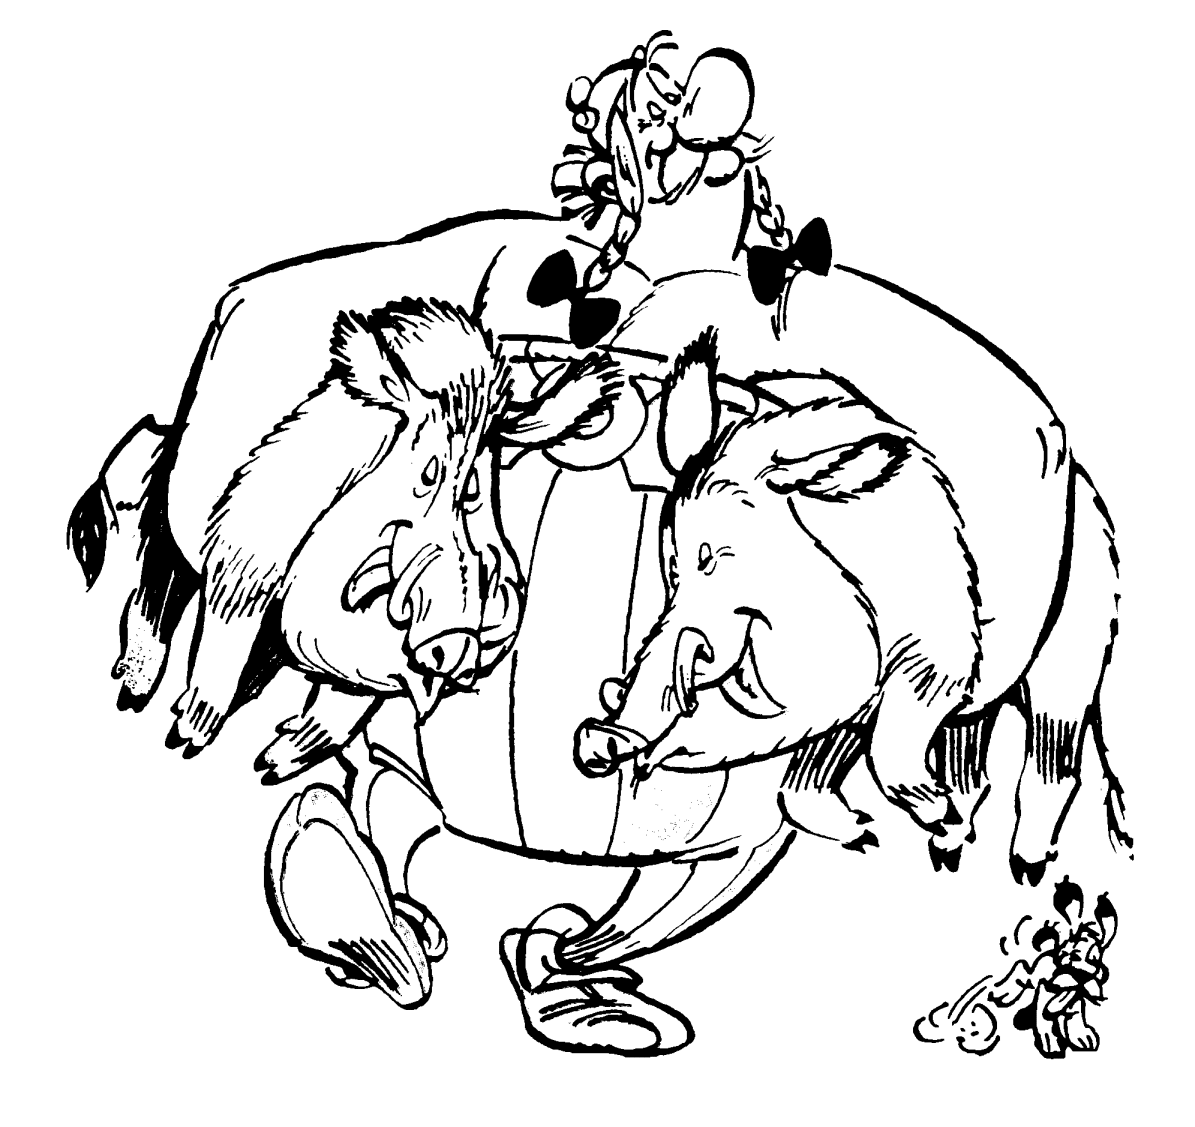 Obelix e la caccia disegno da colorare gratis